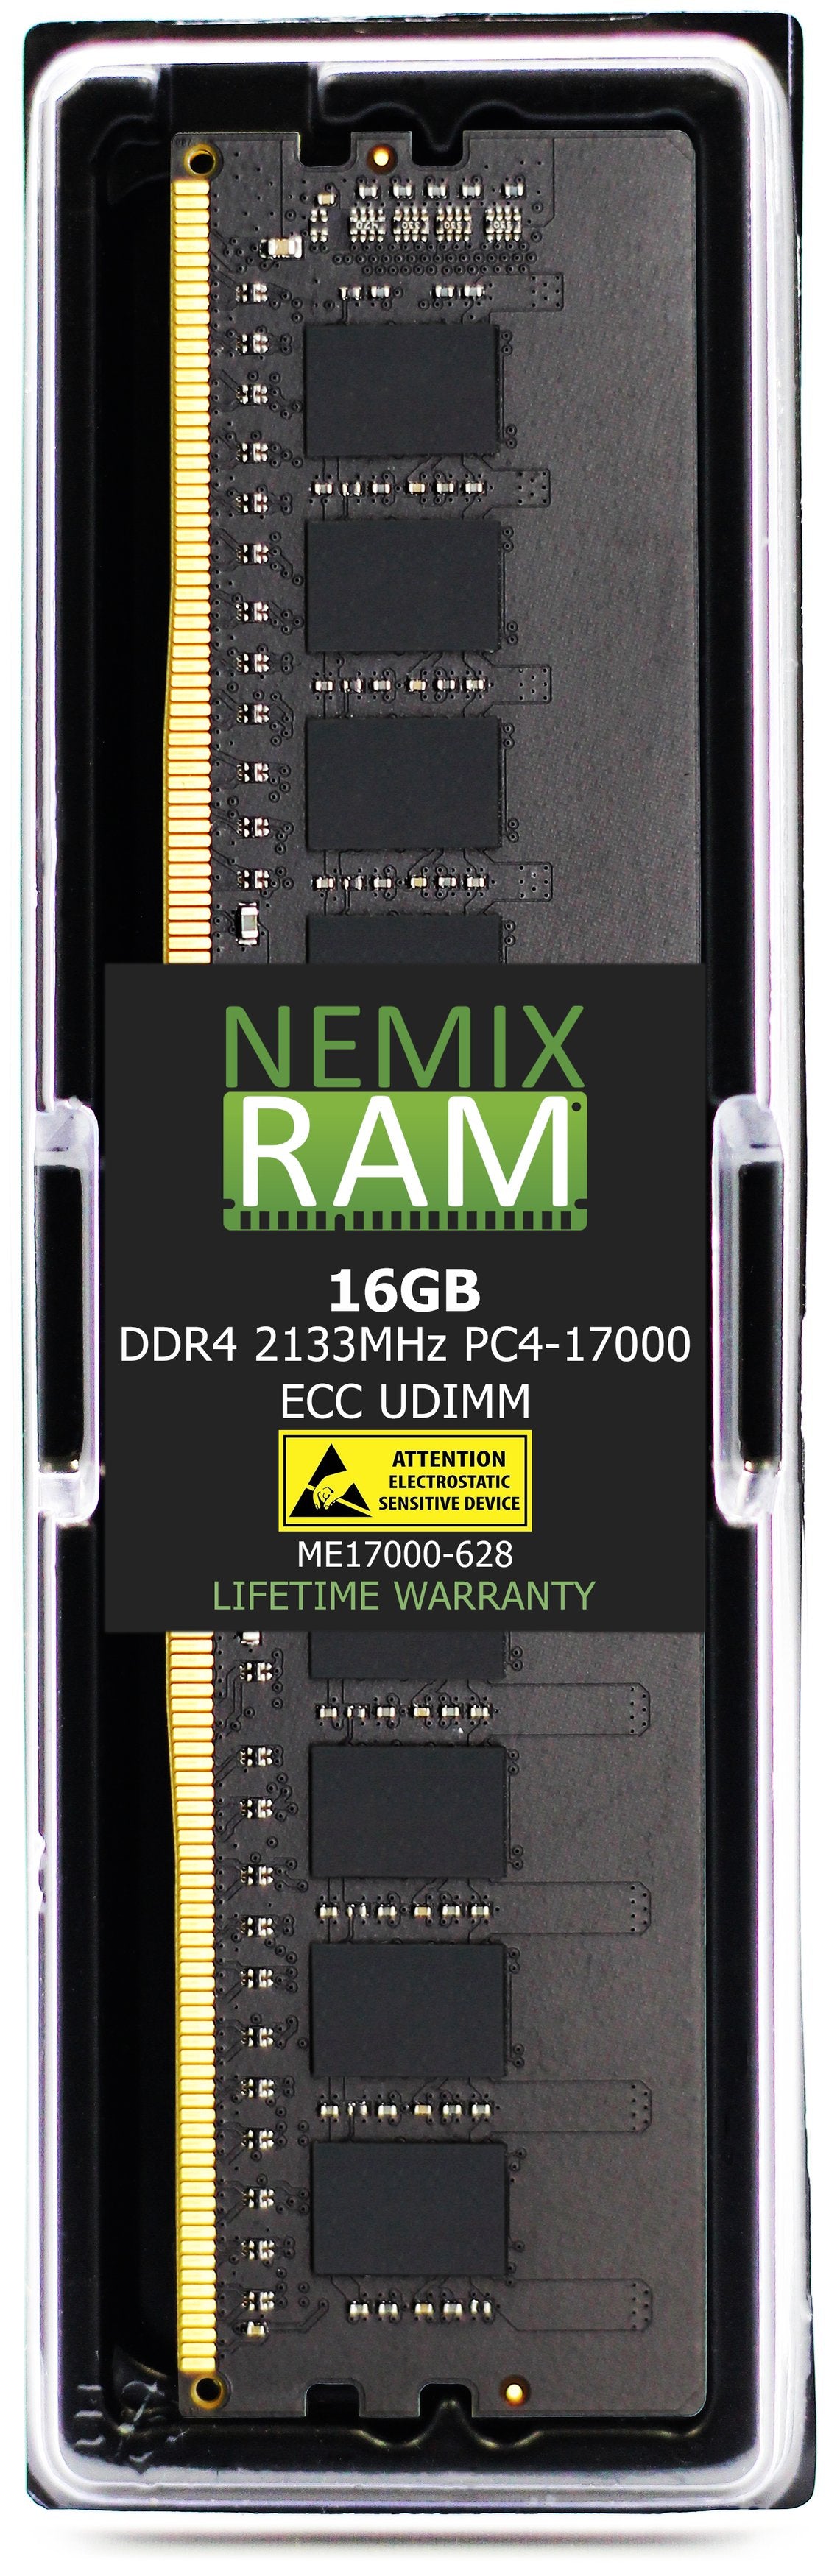 DELL SNP7XRW4C/16G A8661096 16GB DDR4 2133MHZ PC4-17000 ECC UDIMM Compatible Upgrade